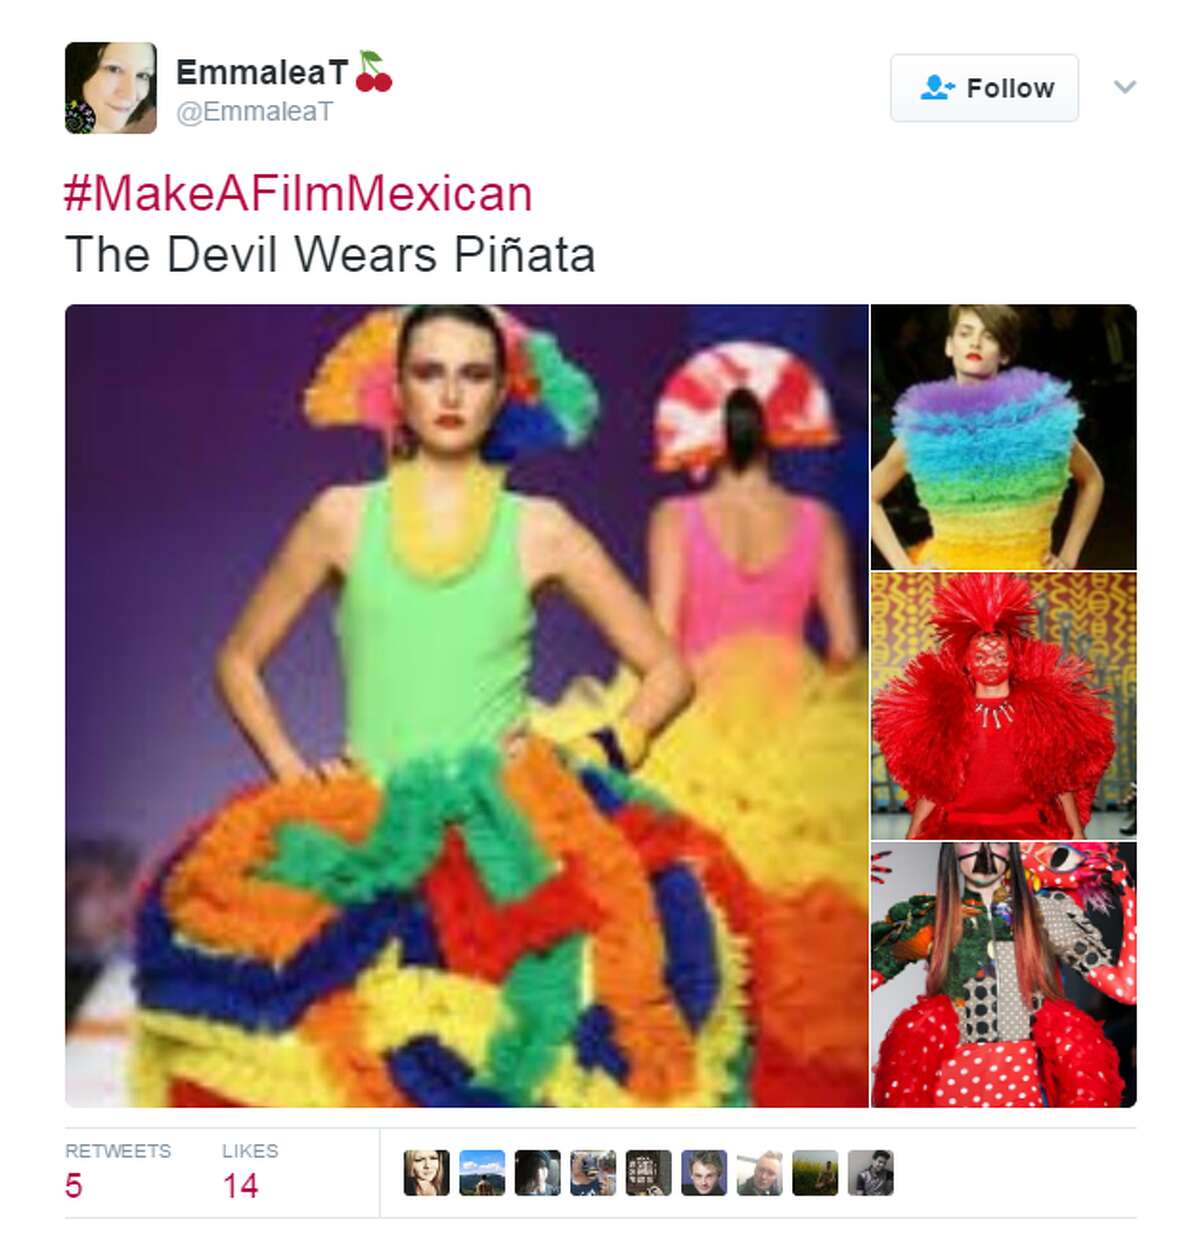 @EmmaleaT: #MakeAFilmMexican The Devil Wears Piñata